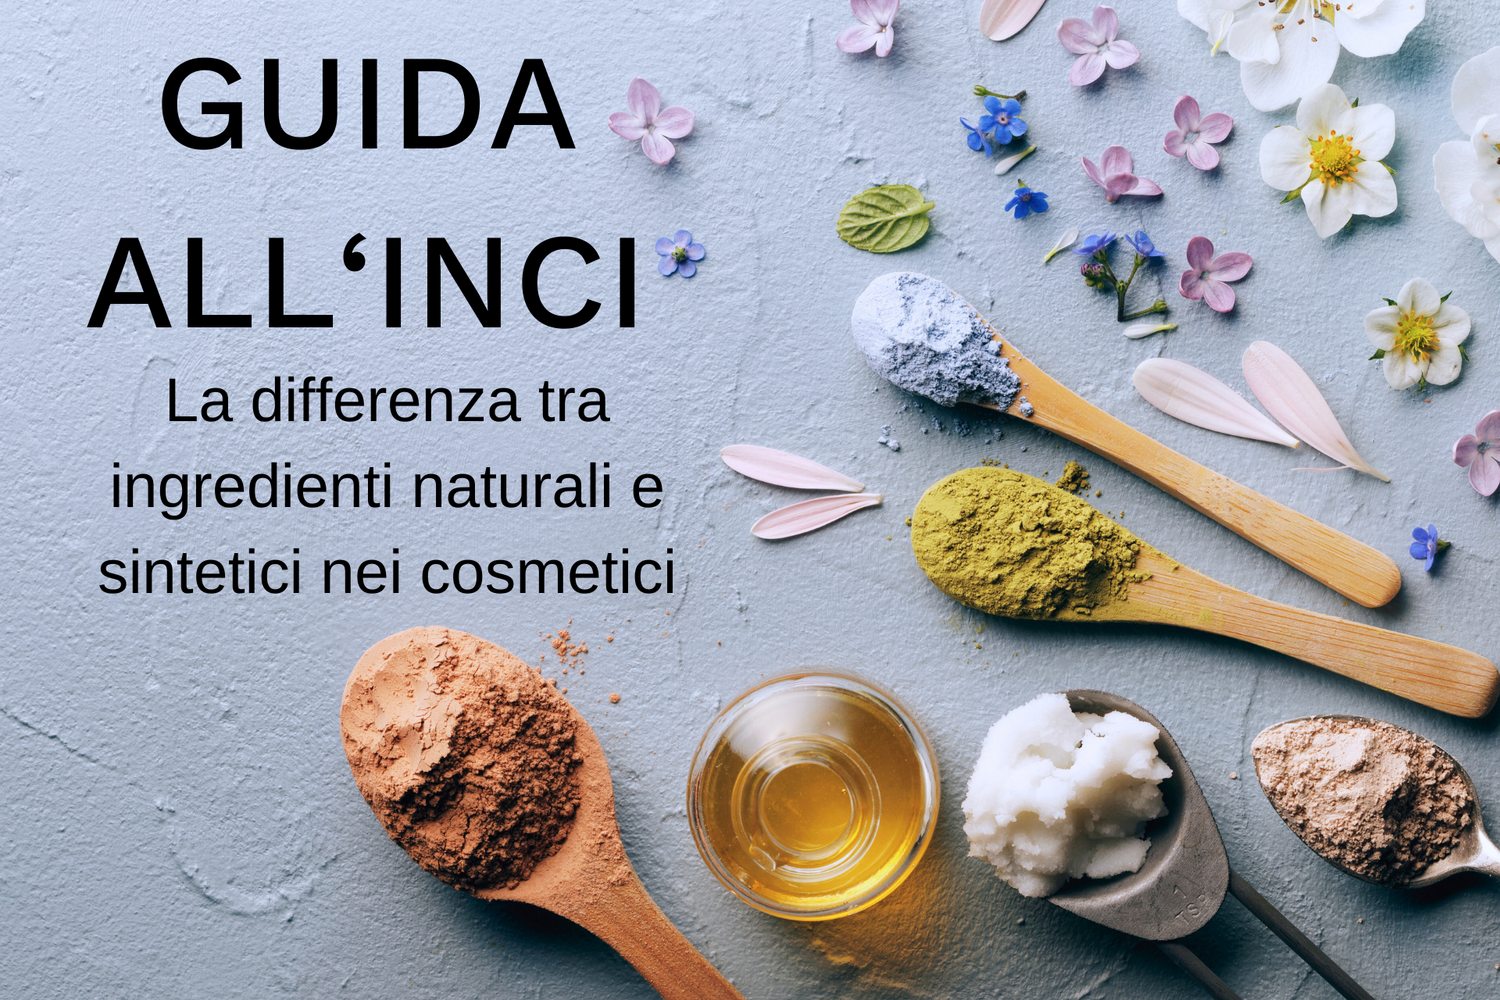 La differenza tra ingredienti naturali e sintetici nei cosmetici: guida all'interpretazione dell'INCI